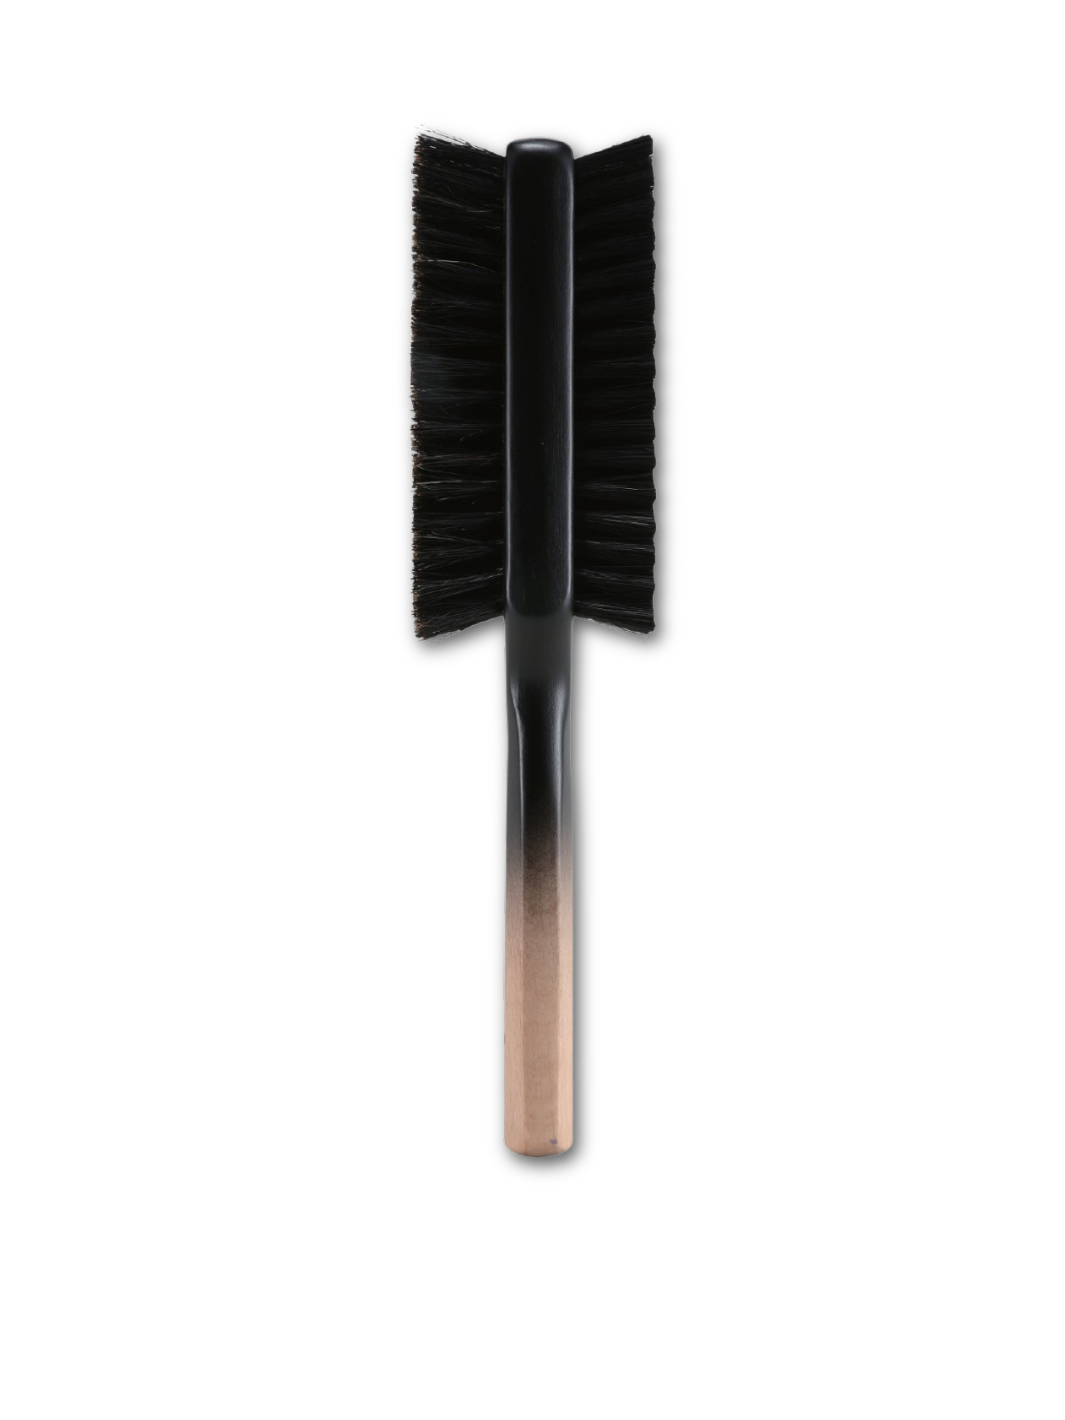  JRL Premium Double-Sided Brush mit ergonomischem Griff und zwei Bürstenseiten, erhältlich bei Phullcutz.